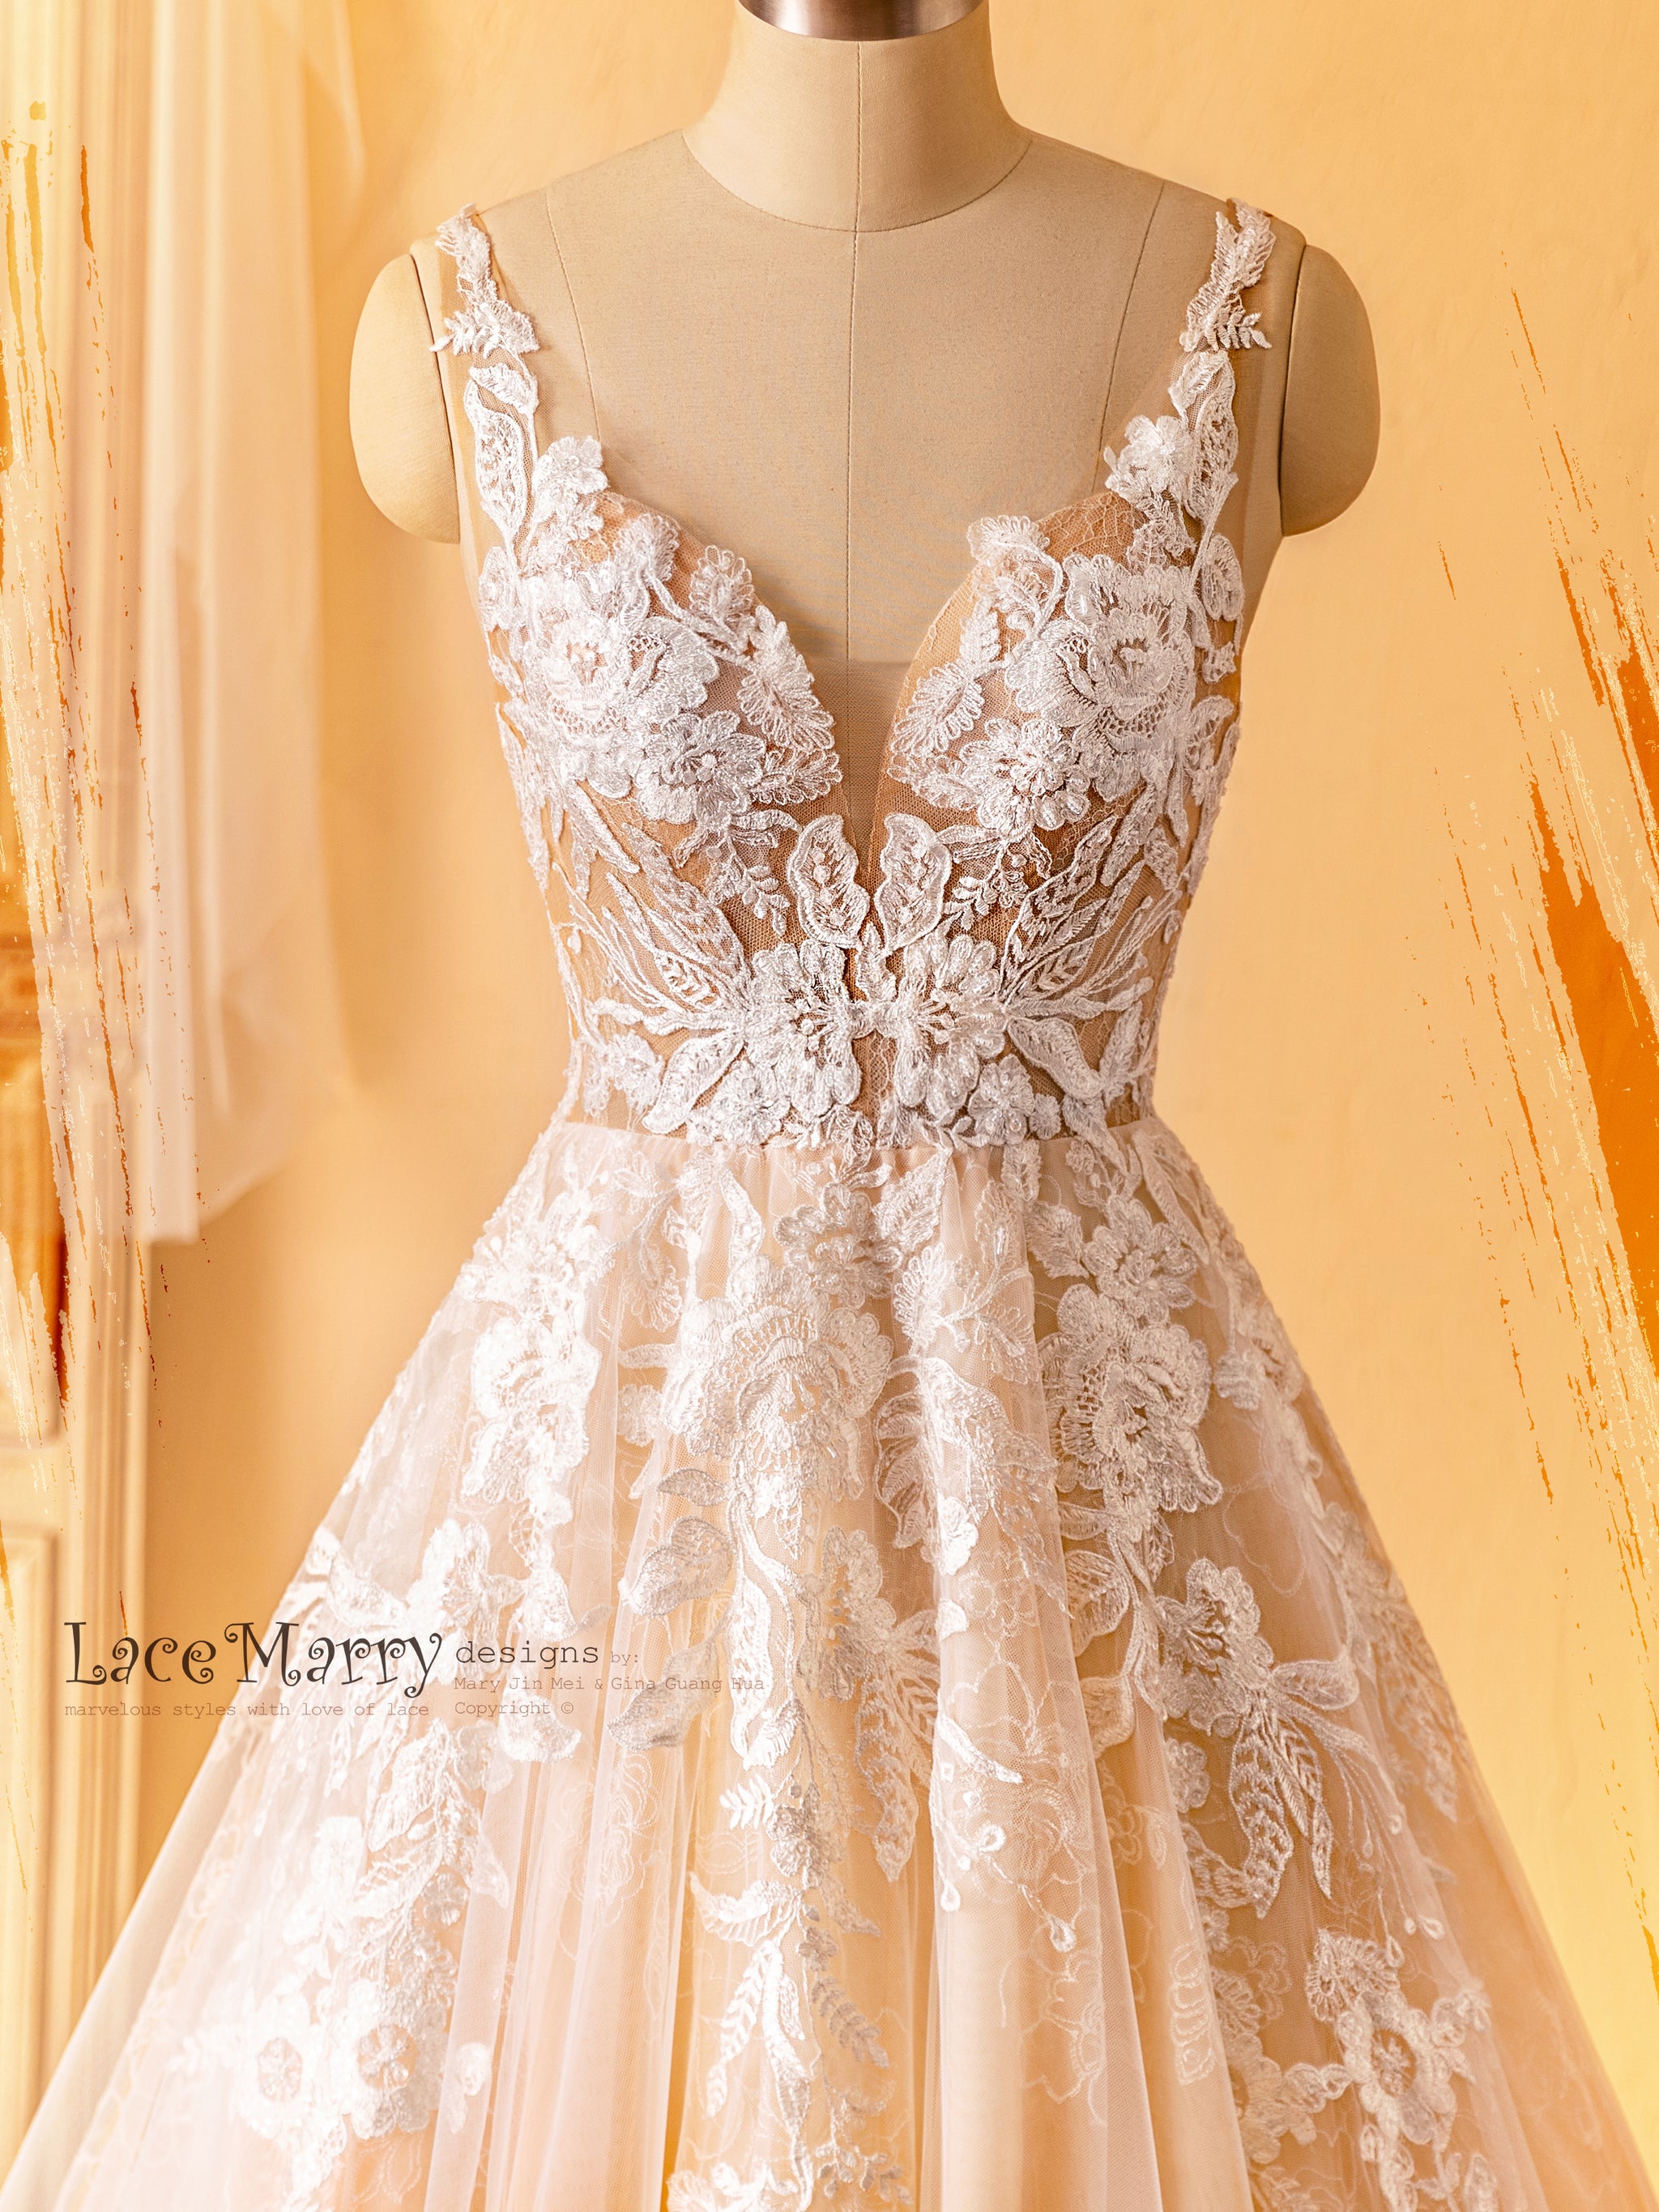 Evangeline Evening Gown (Blush) - Wedding Dresses, Evening Wear